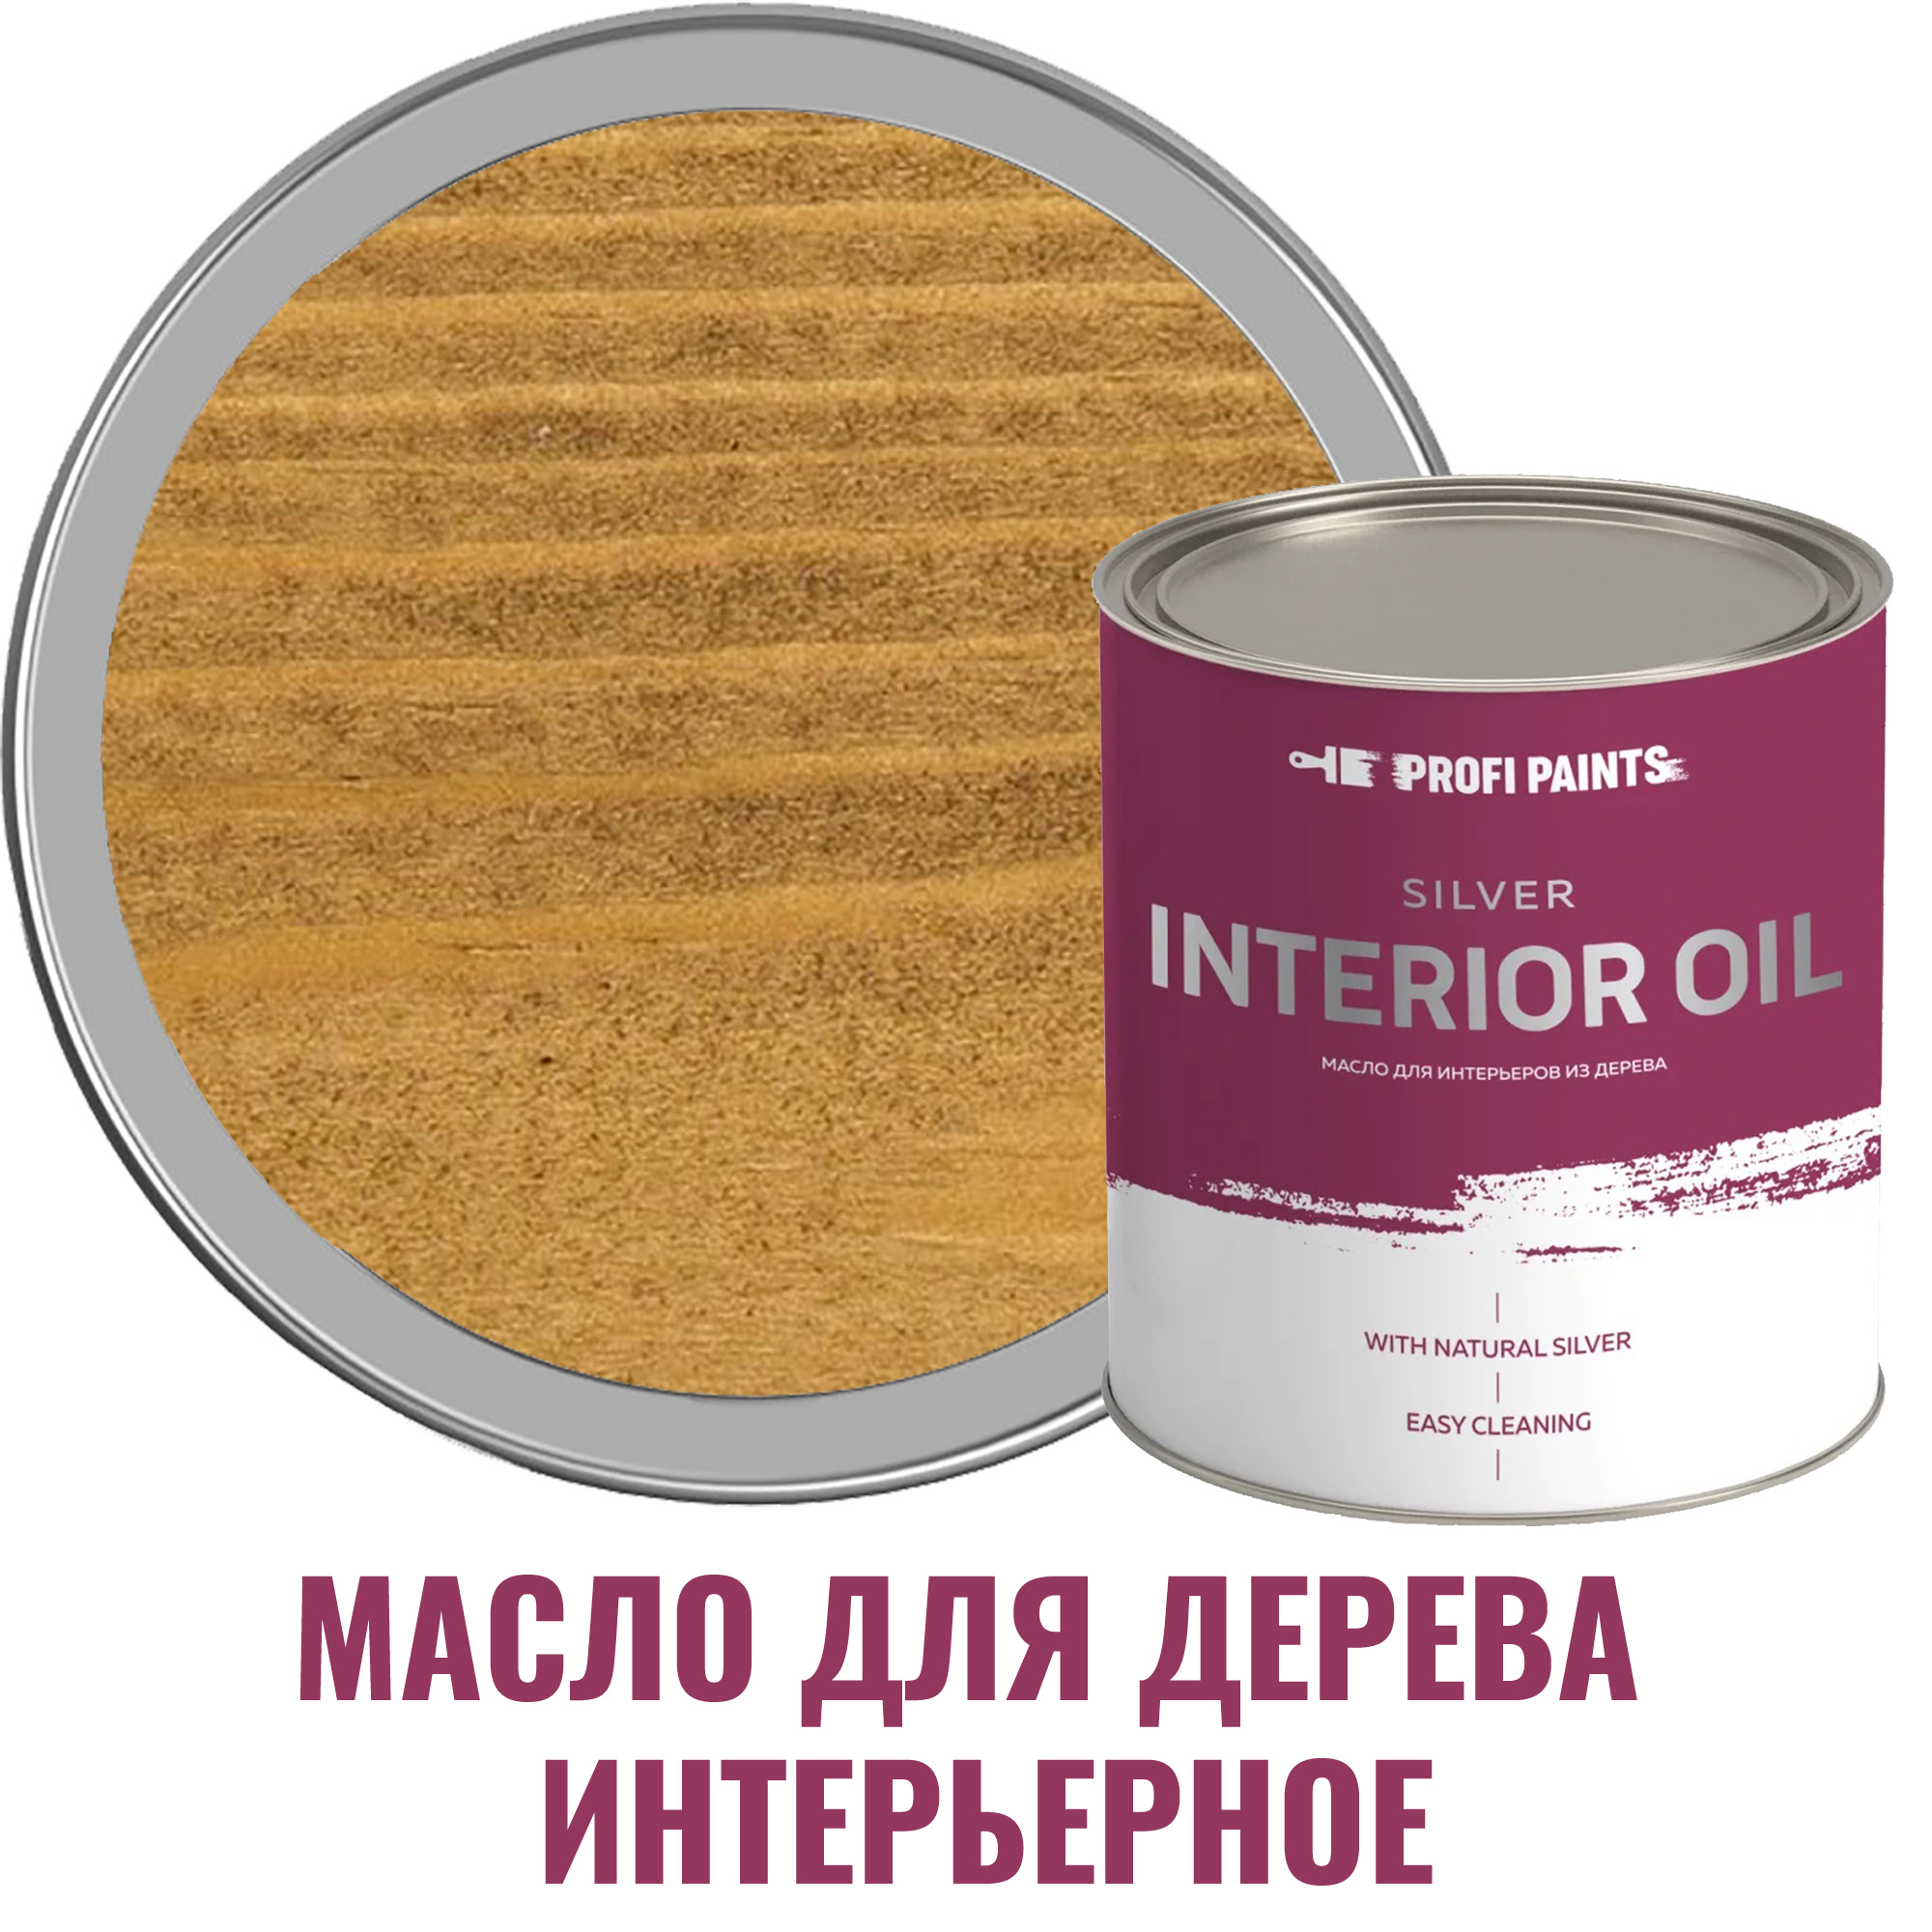 91095441 Масло для стен и потолков Silver Interior Oil цвет солома 2.7 л STLM-0481799 PROFIPAINTS